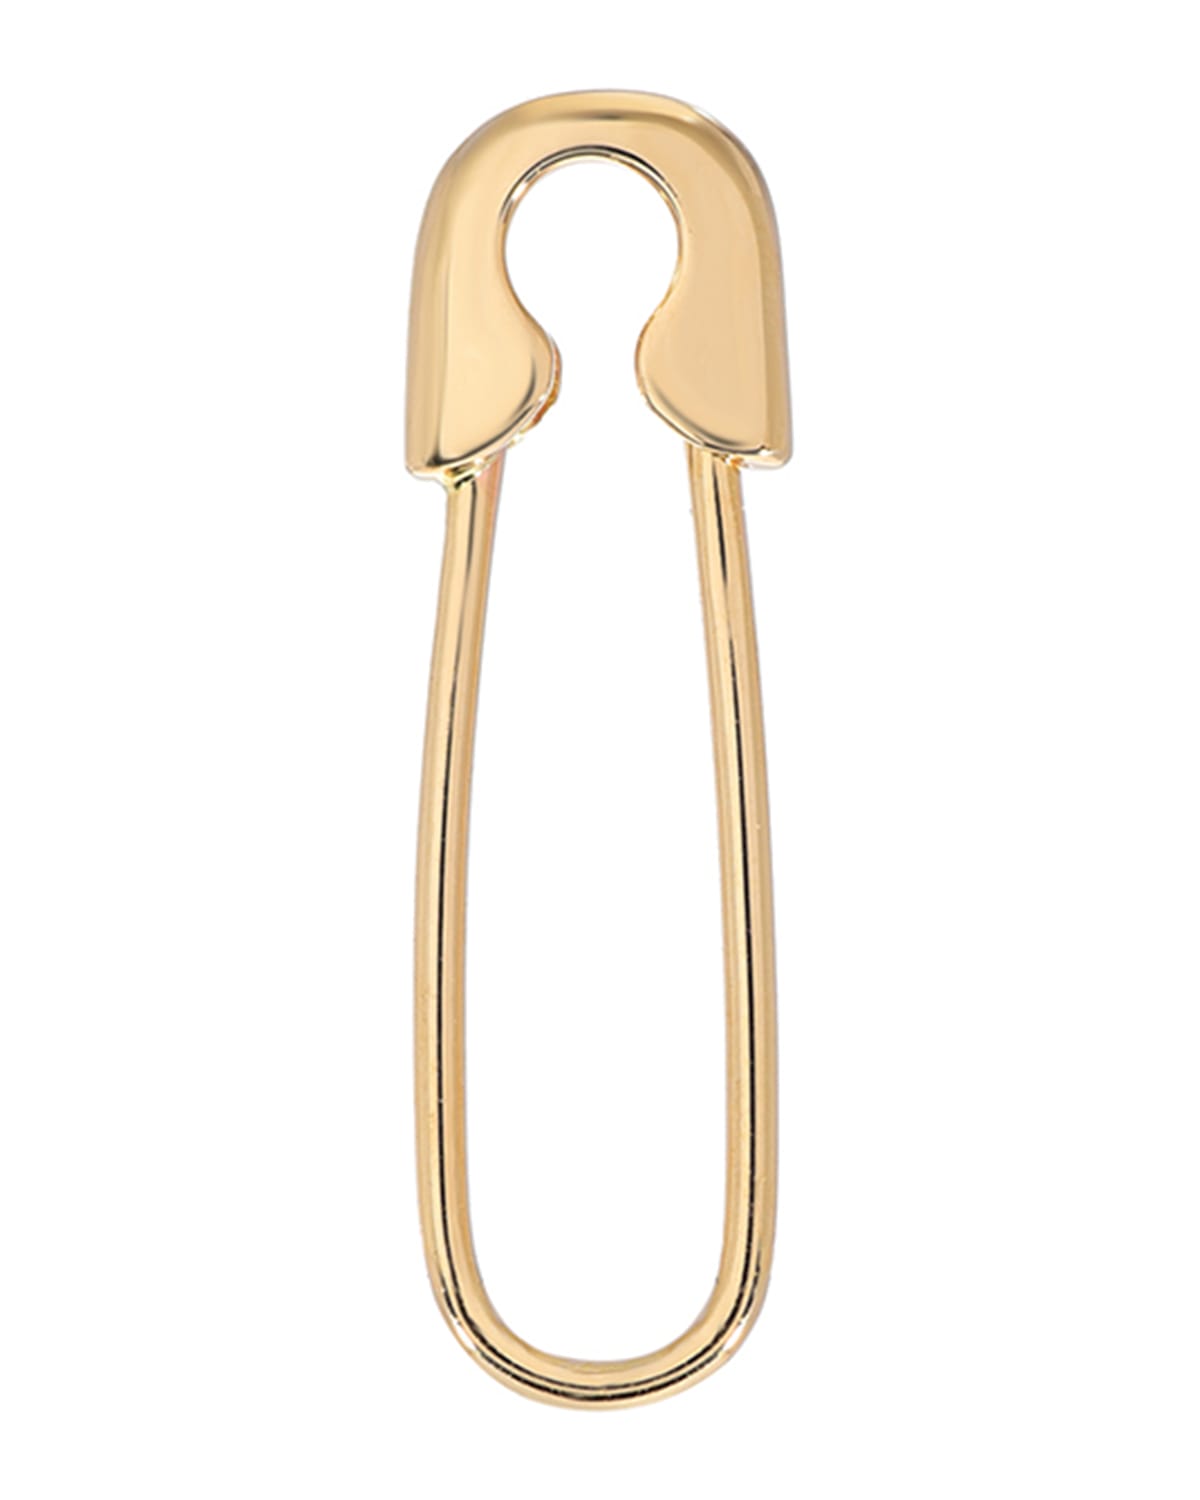 Zoe Lev Jewelry 14k Gold Safety Pin Earring, Single